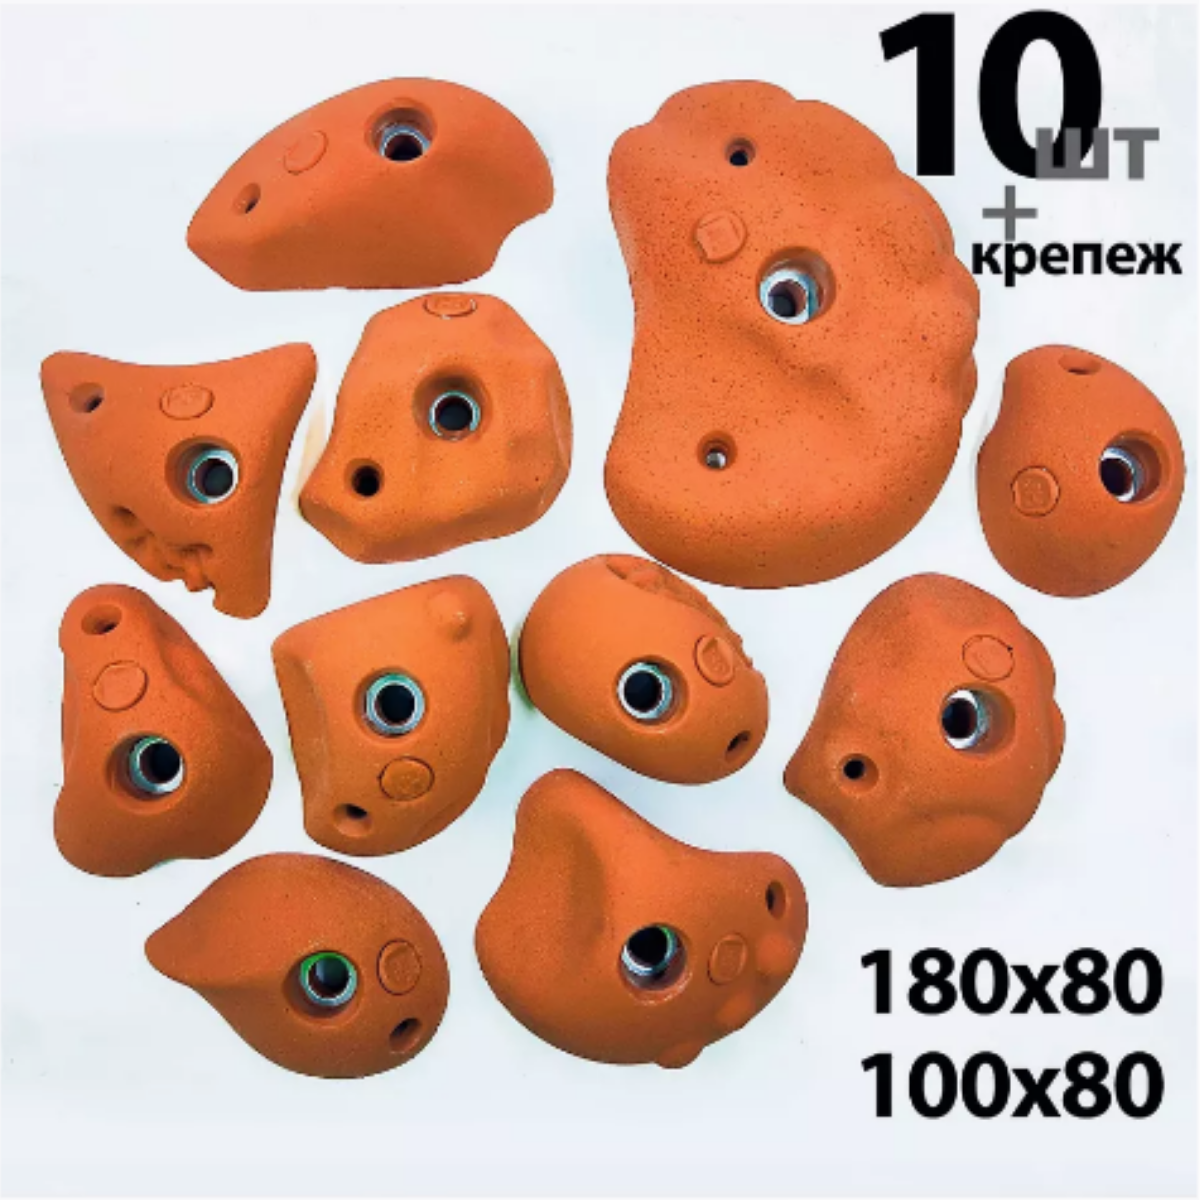 Зацепы для скалодрома Скалодромы Жужа сет Dune оранжевые 10 шт с крепежом